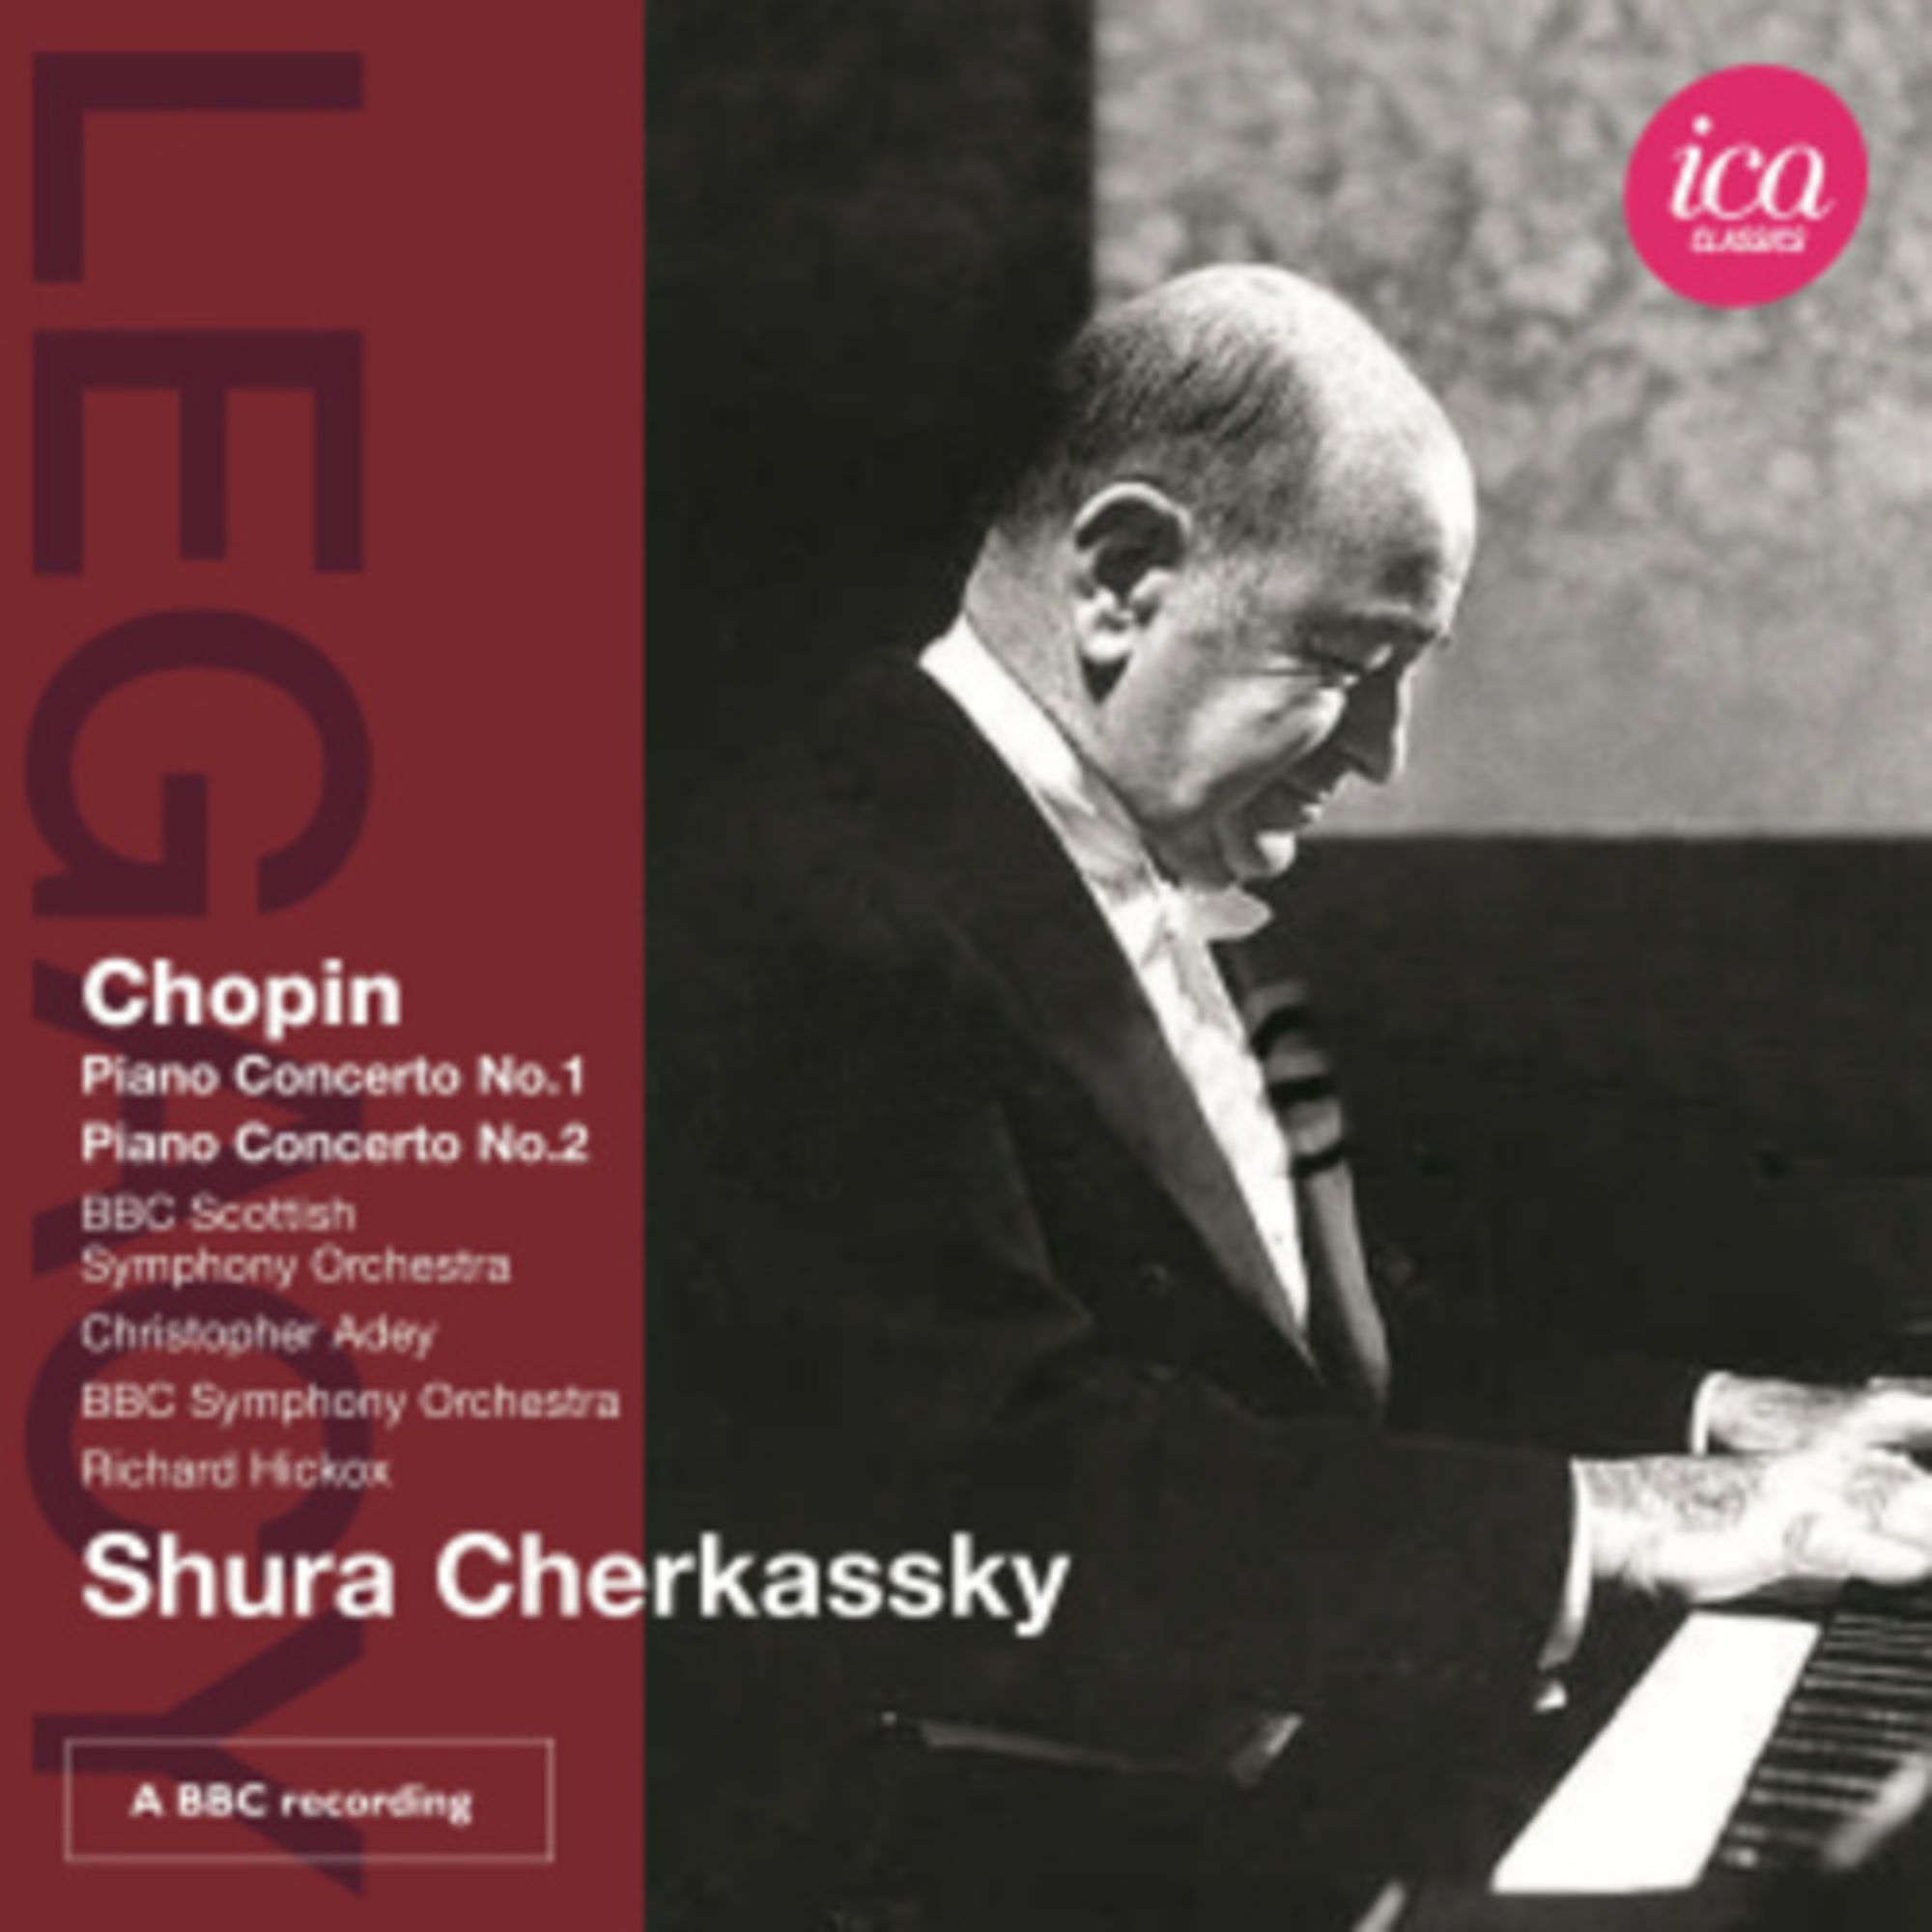 Cherkassky'　'Shura　von　auf　Klavierkonzerte　Musik　1+2'　'CD'